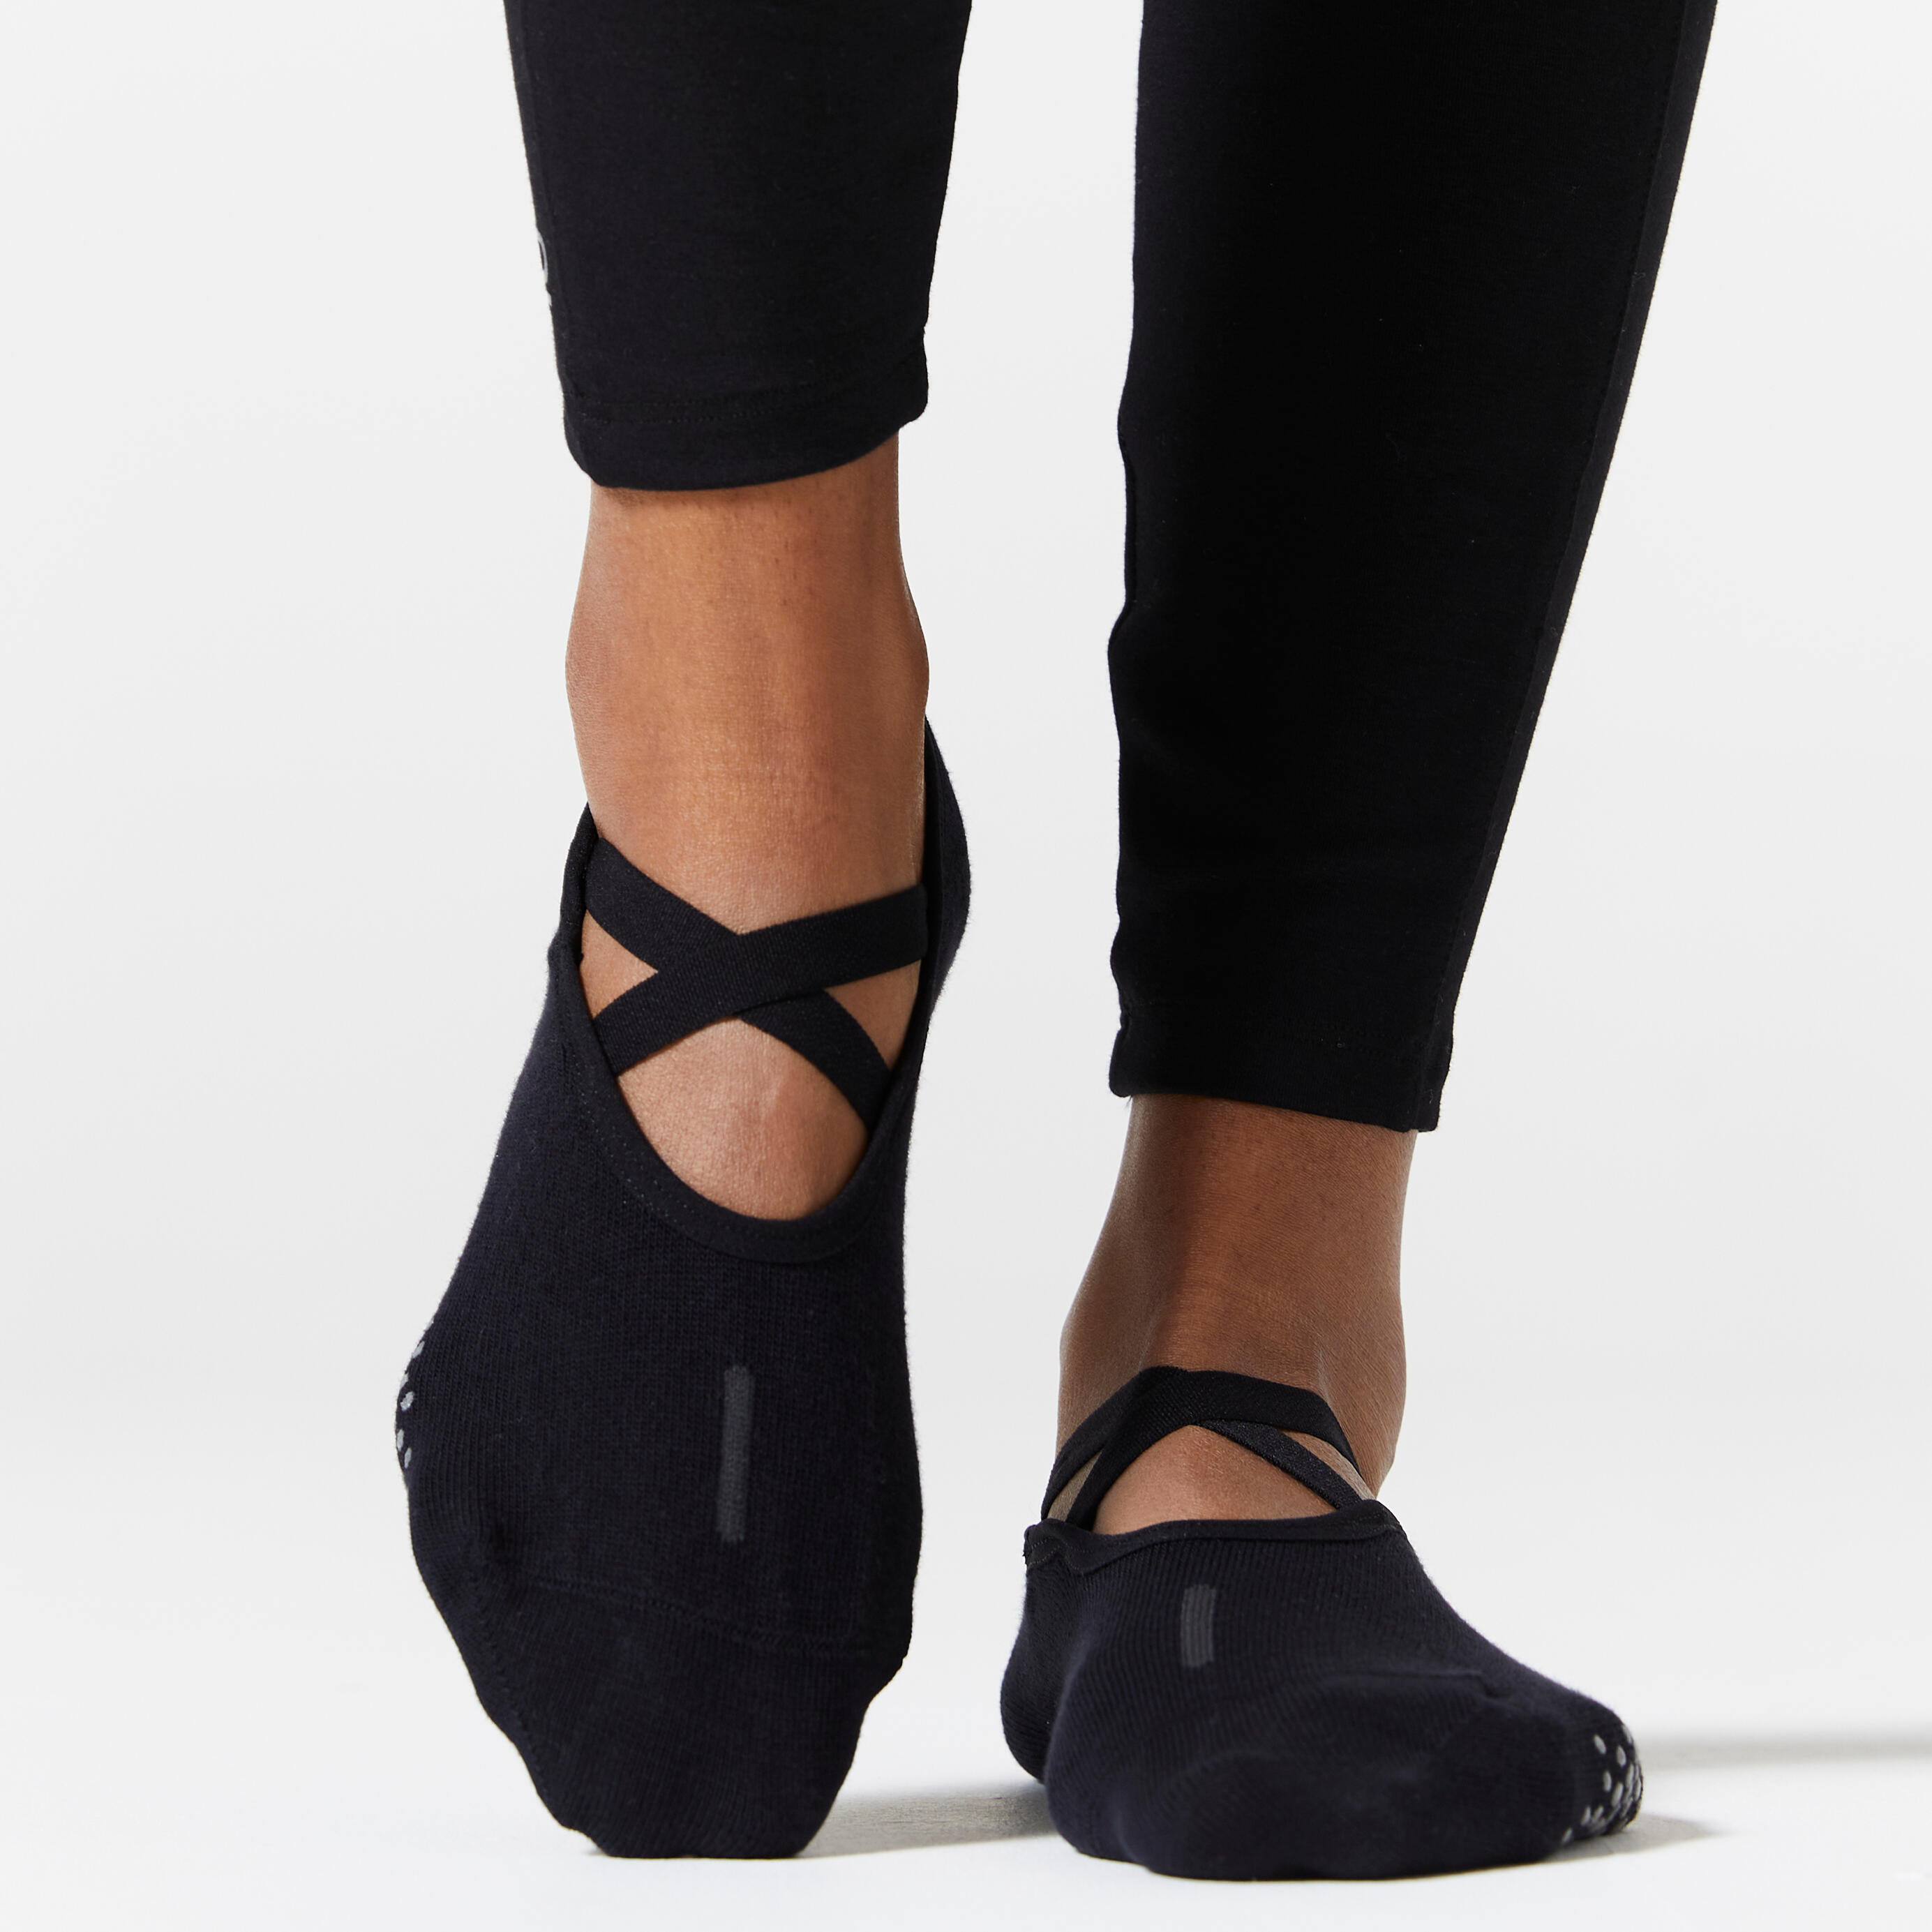 Women's Non-Slip Cotton Ballet Fitness Socks 500 - Black 2/5